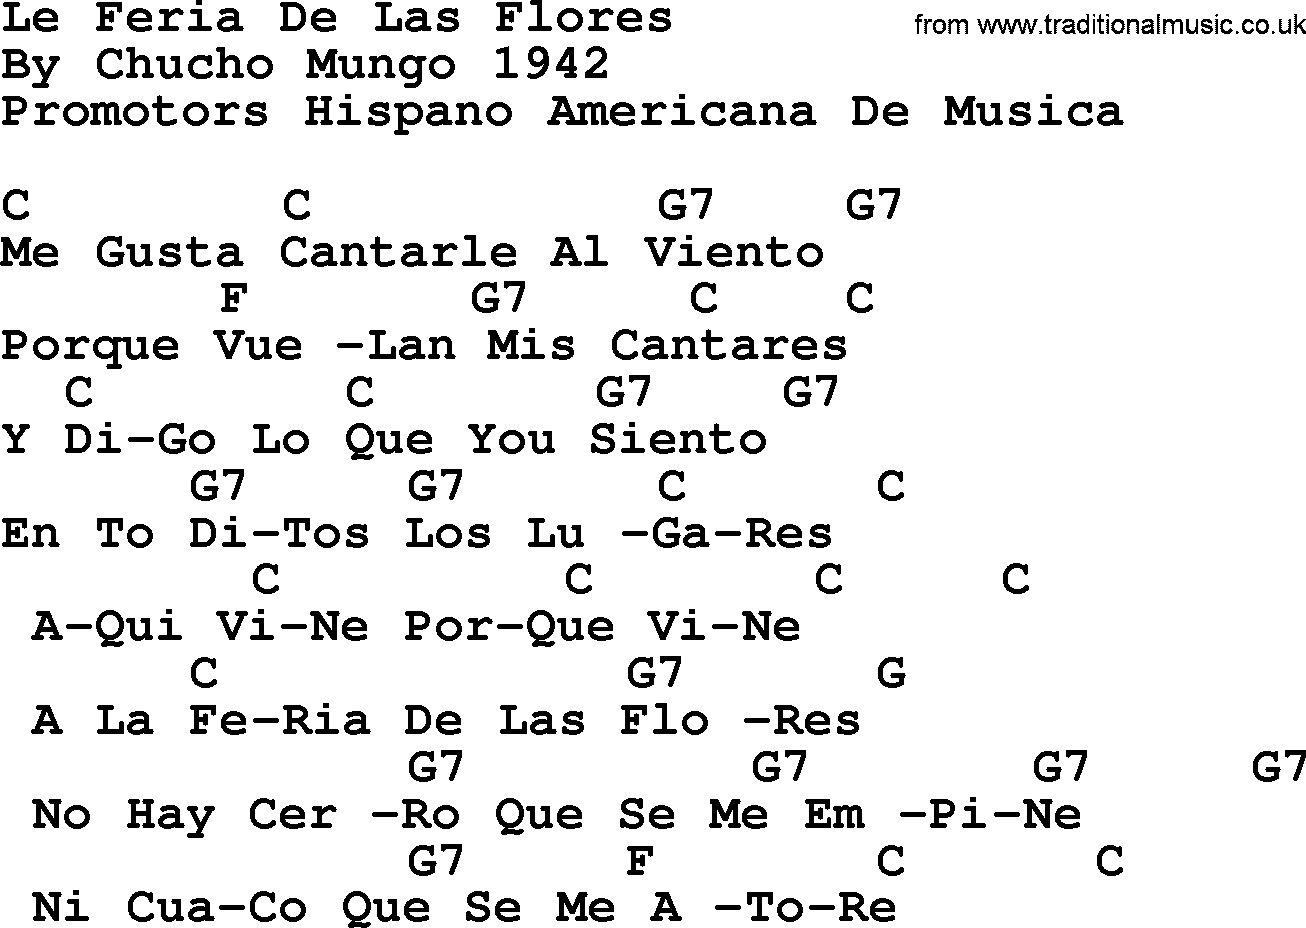 Pete Seeger song Le Feria De Las Flores, lyrics and chords